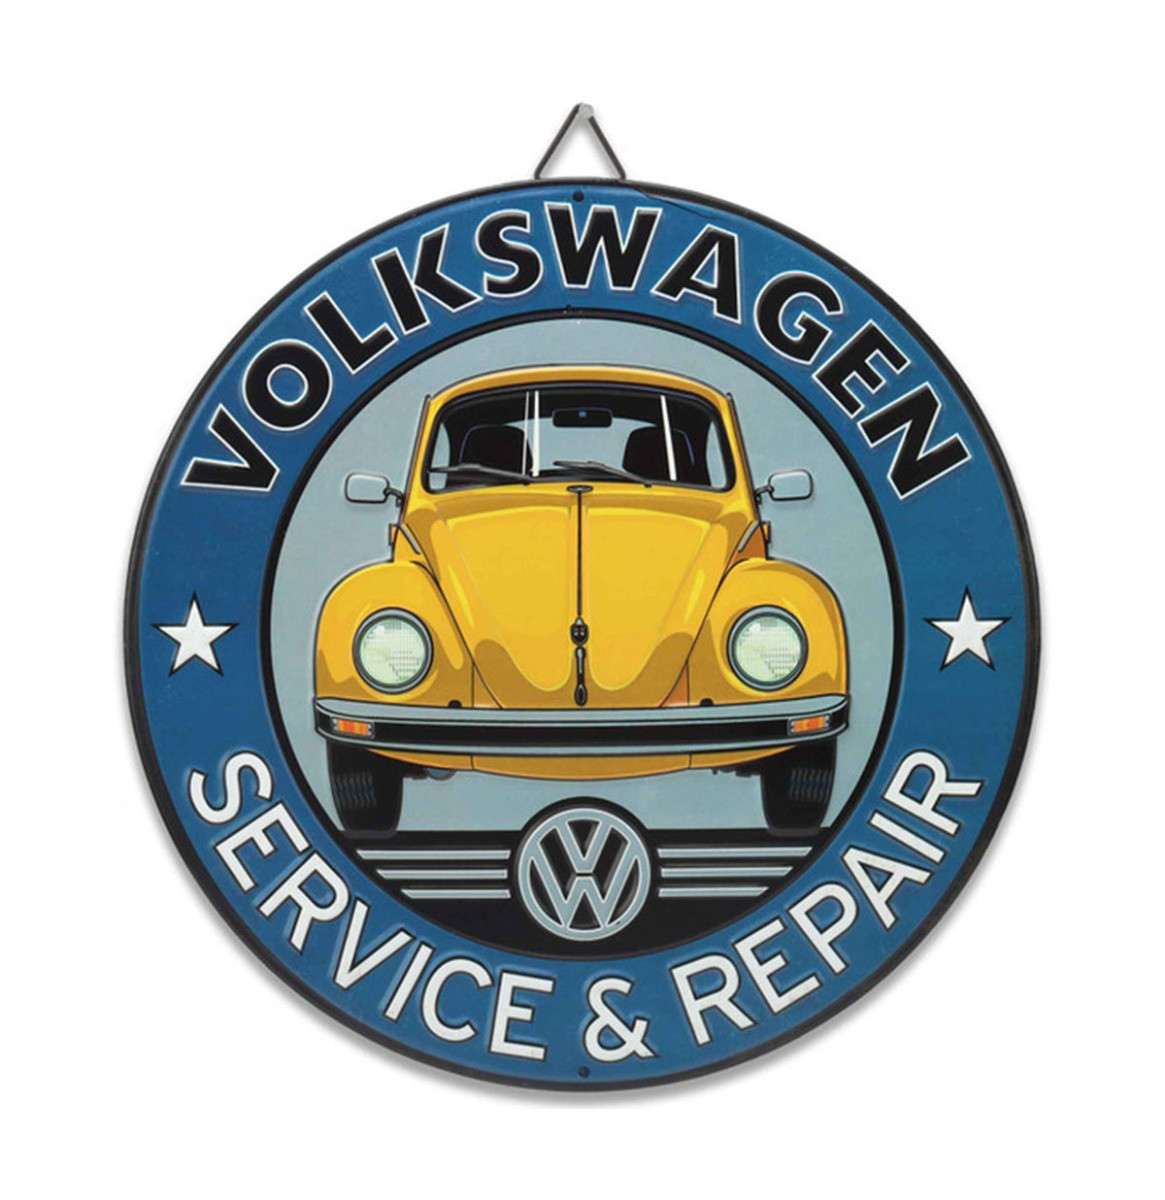 Volkswagen Service & Repair Metalen Bord - Ø30cm